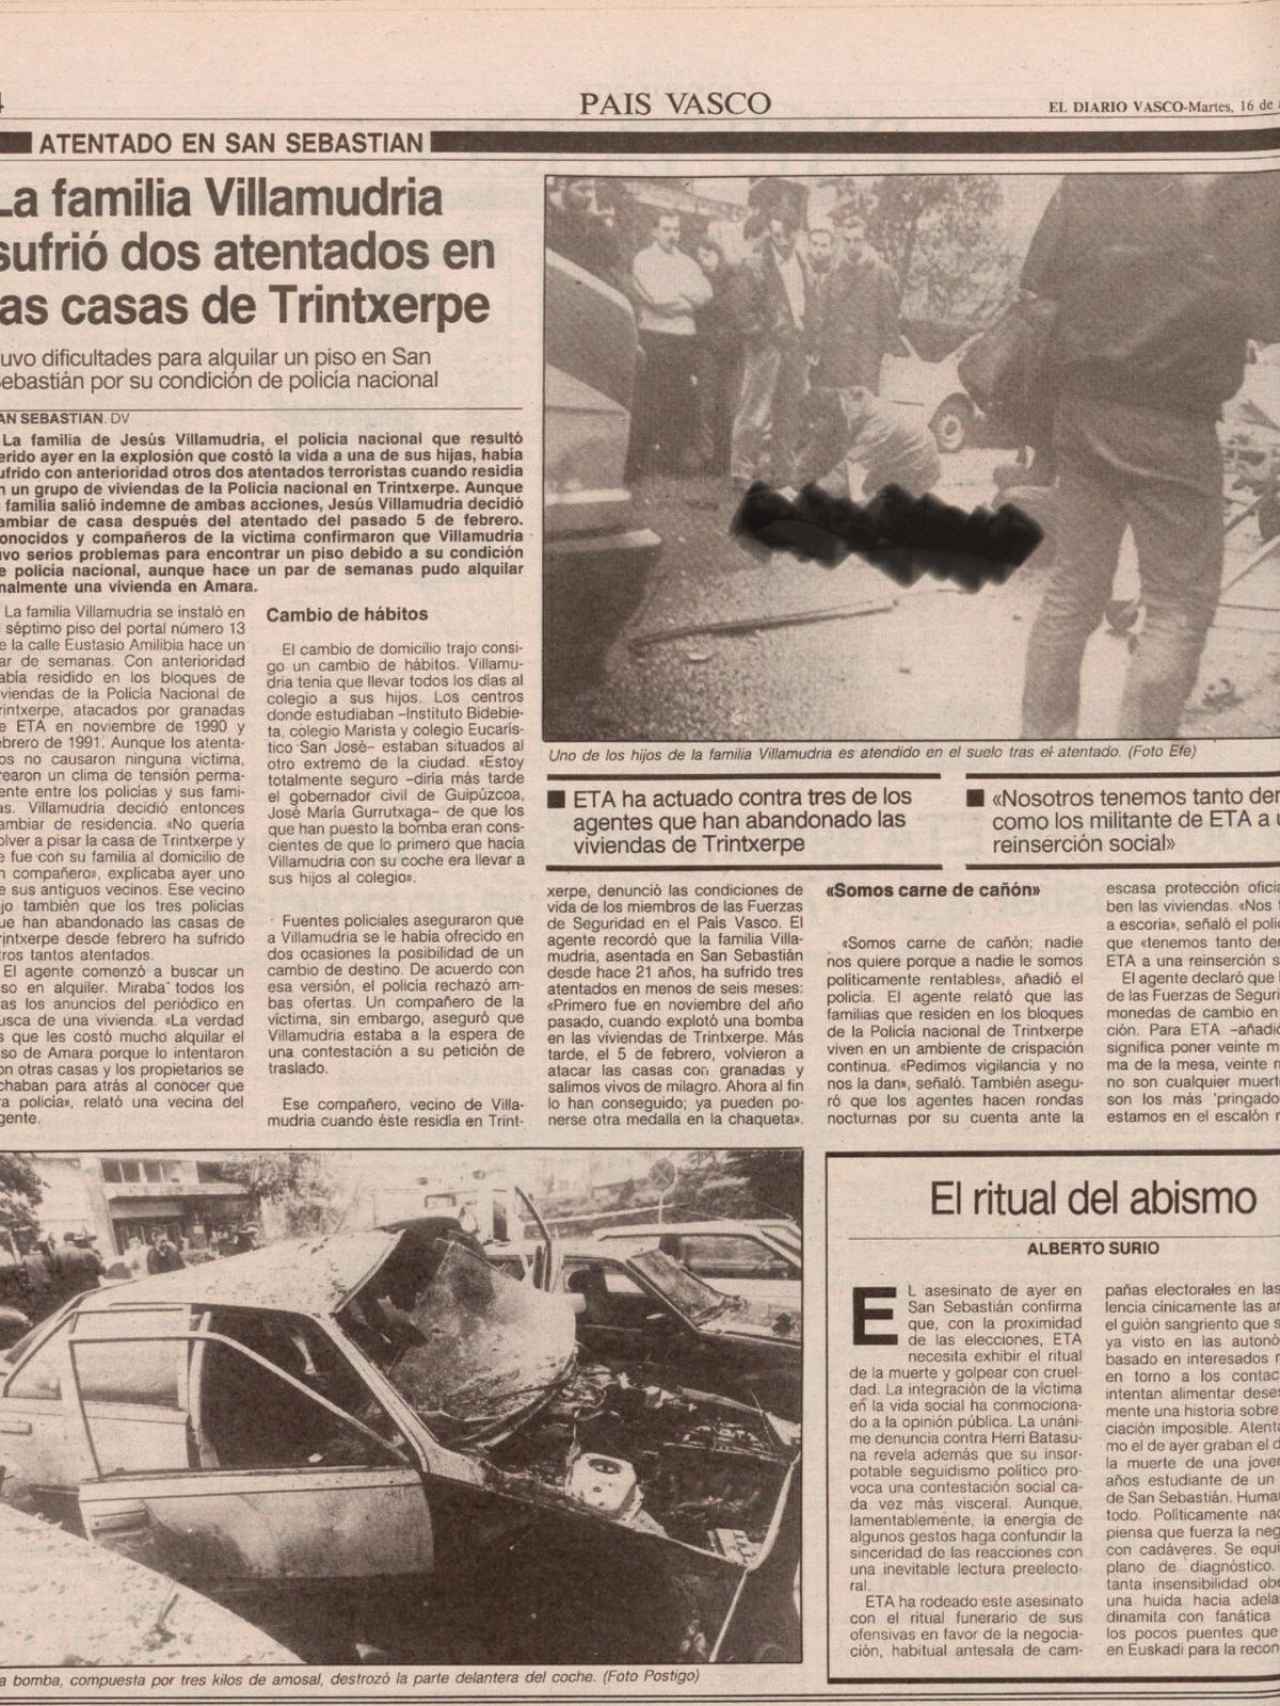 Imágenes del atentado contra Villamudria.